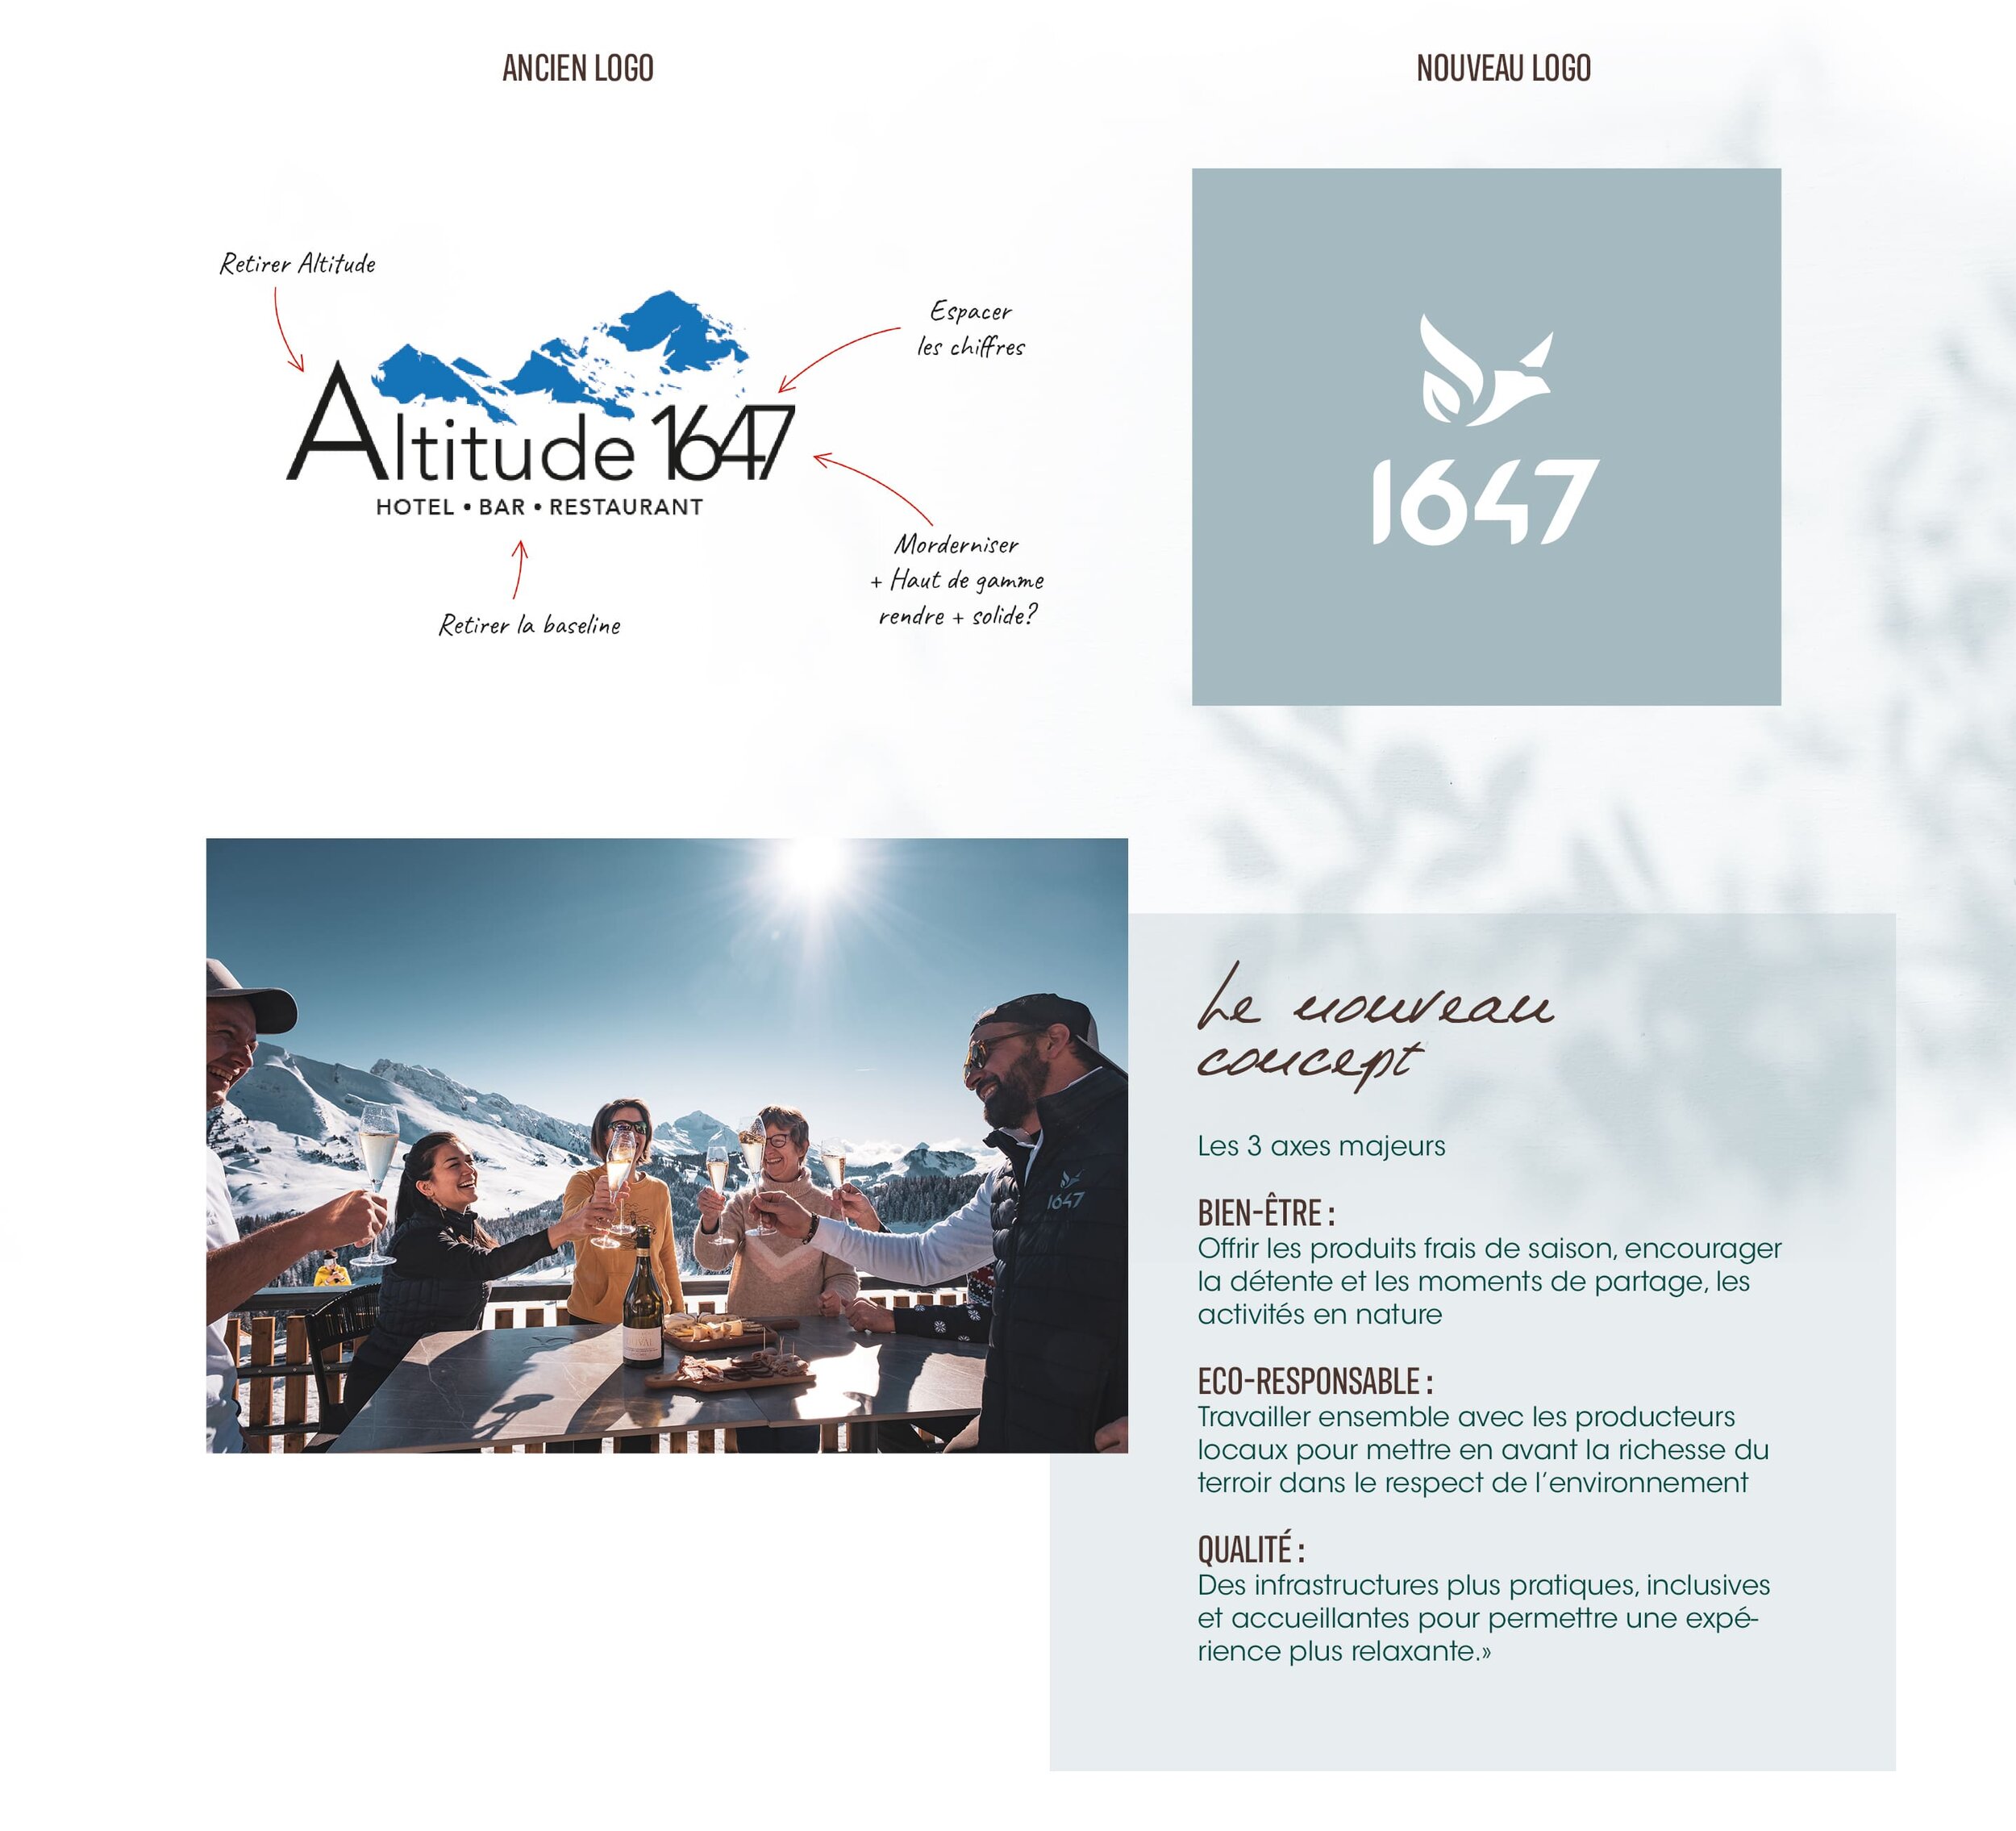 Le nouveau concept du restaurant d'altitude 1647